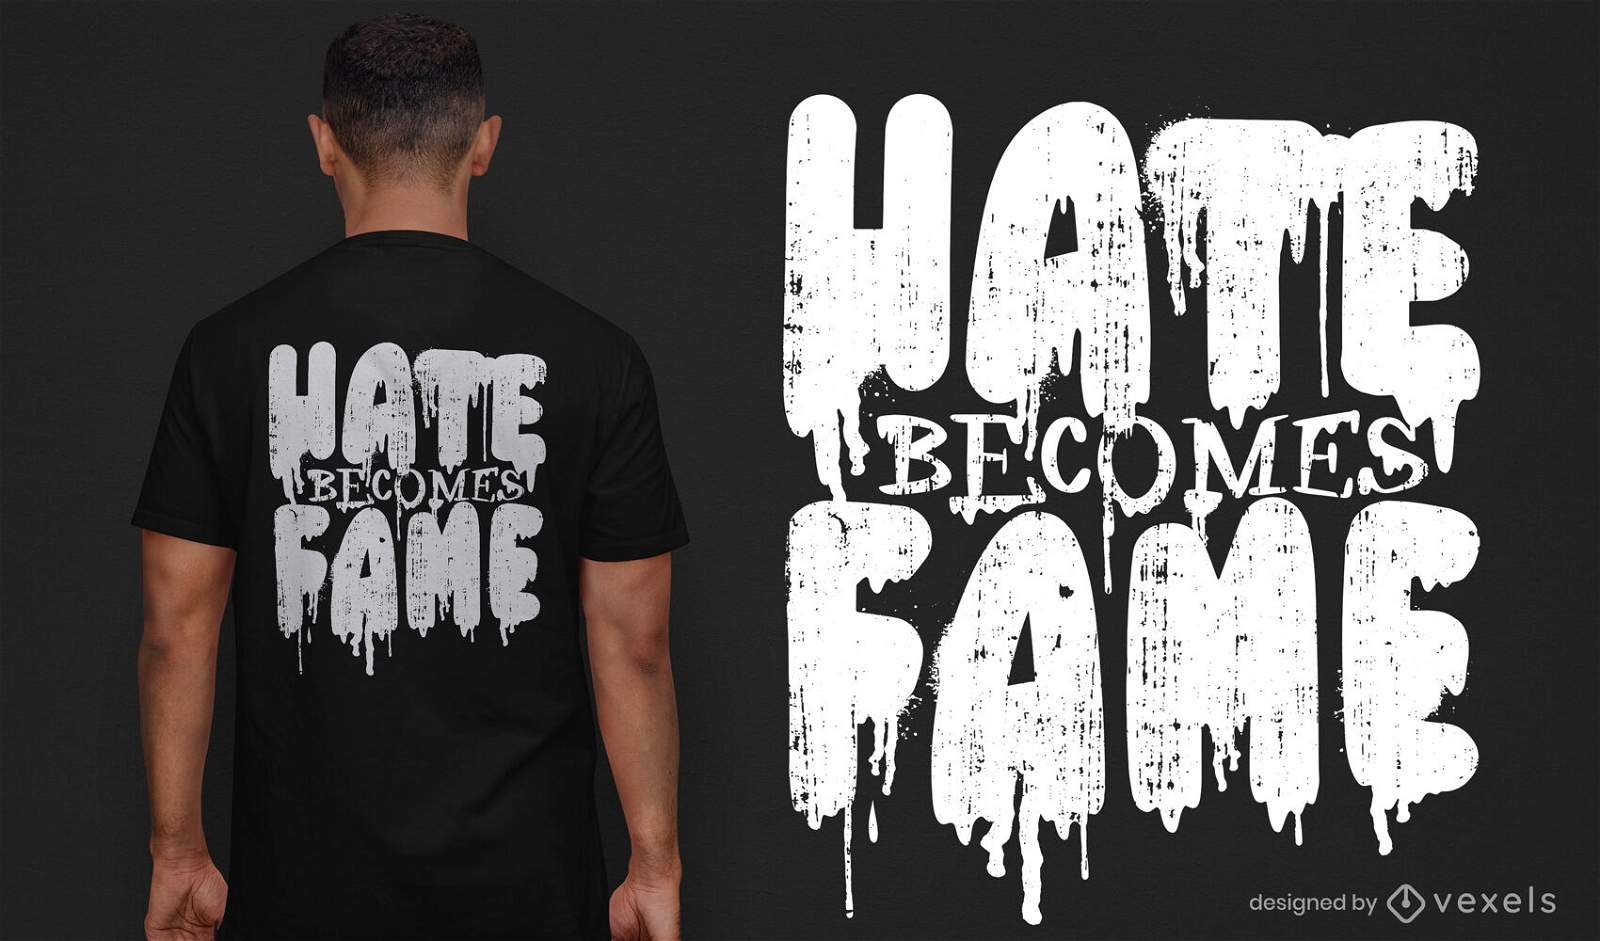 El odio se convierte en dise?o de camiseta de fama.